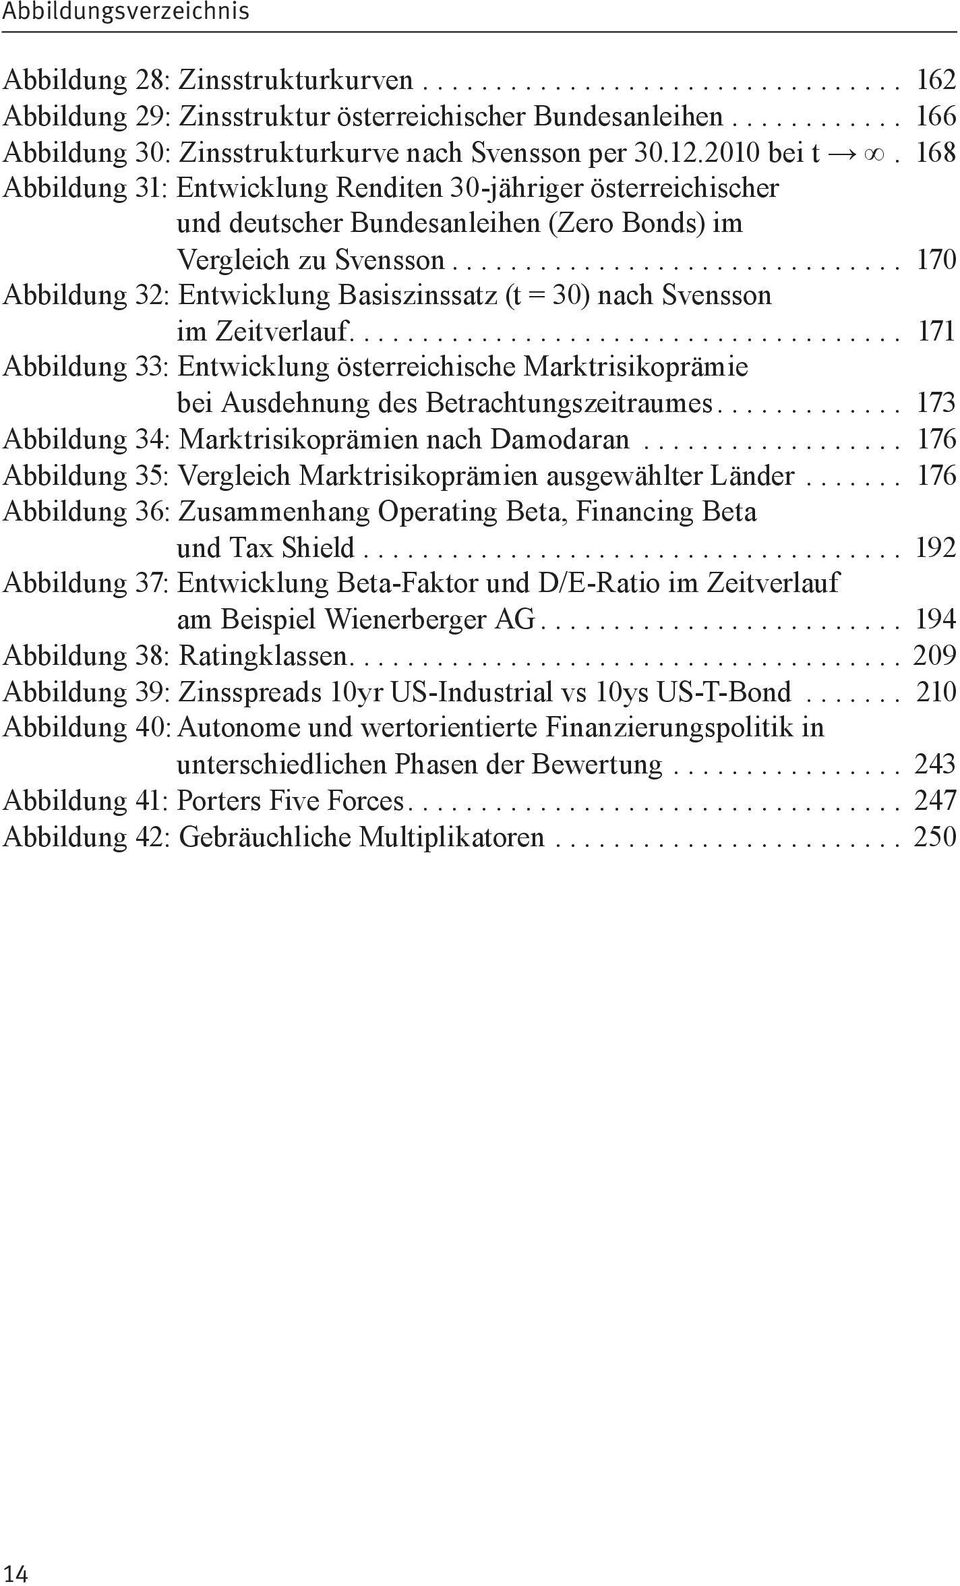 168 Abbildung 31: Entwicklung Renditen 30-jähriger österreichischer und deutscher Bundesanleihen (Zero Bonds) im Vergleich zu Svensson.